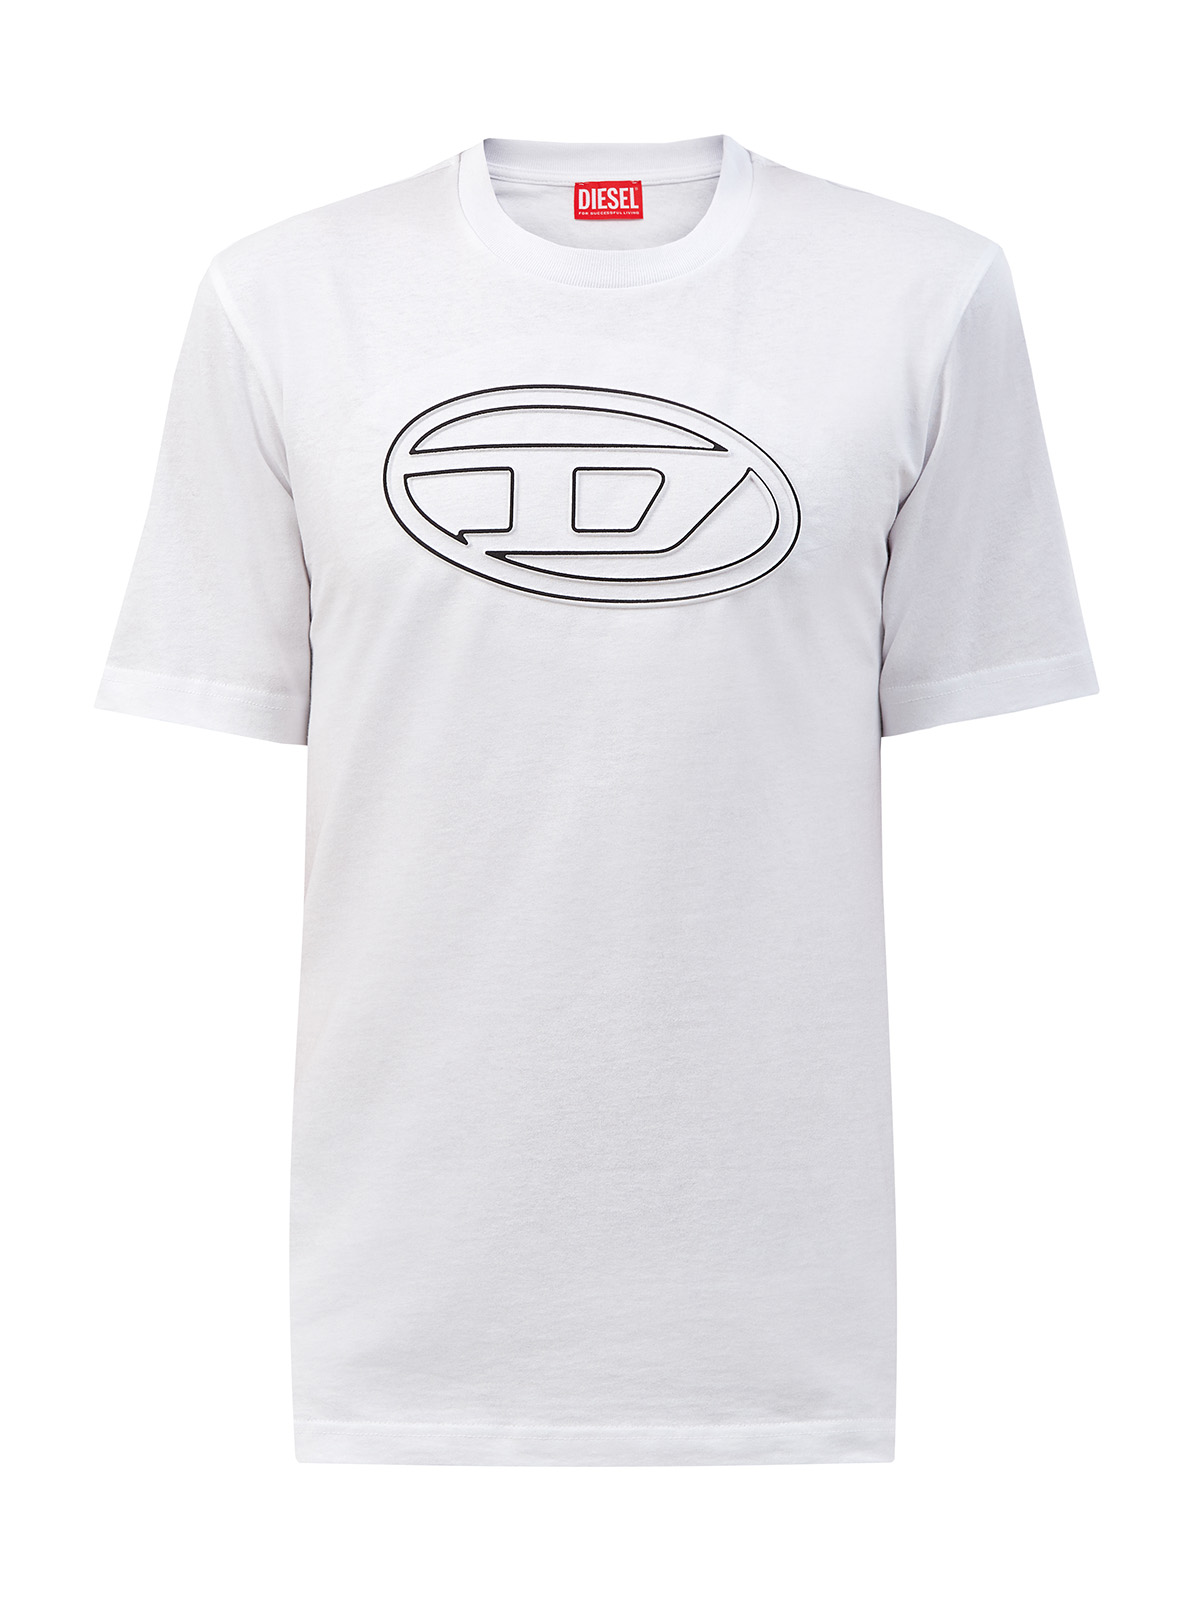 Хлопковая футболка T-Just с макро-логотипом Oval D